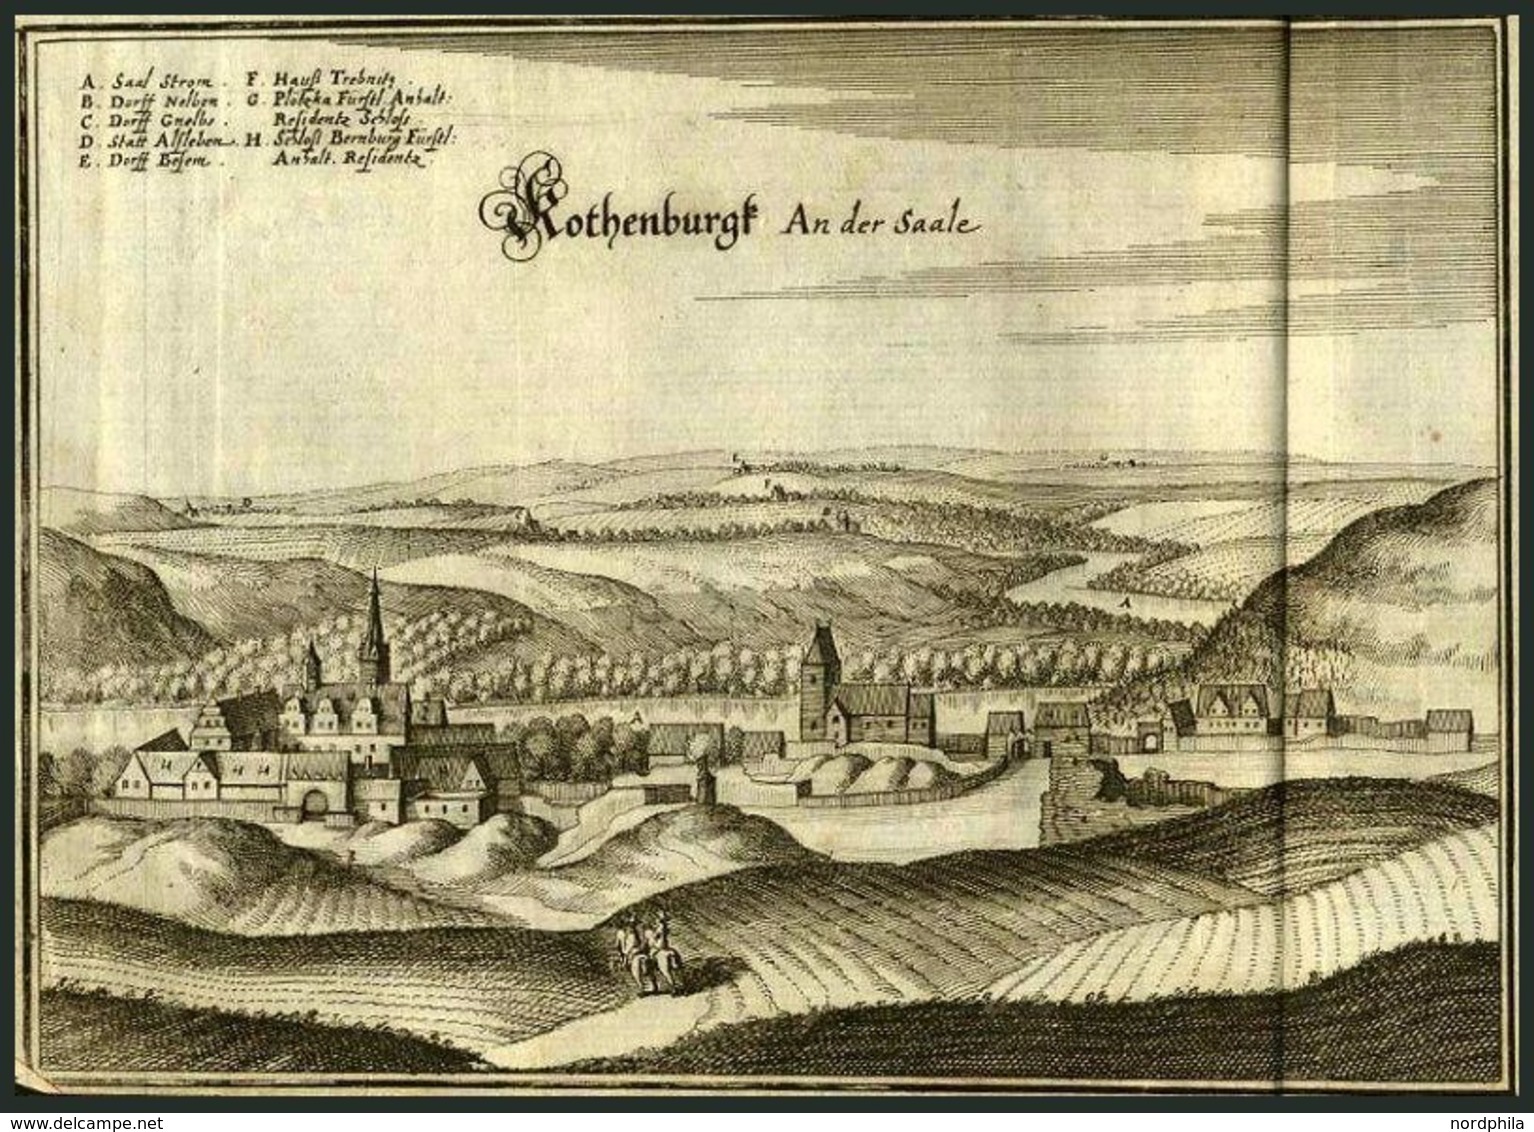 ROTHENBURG Auf D. SAALE, Gesamtansicht, Kupferstich Von Merian Um 1645 - Litografía